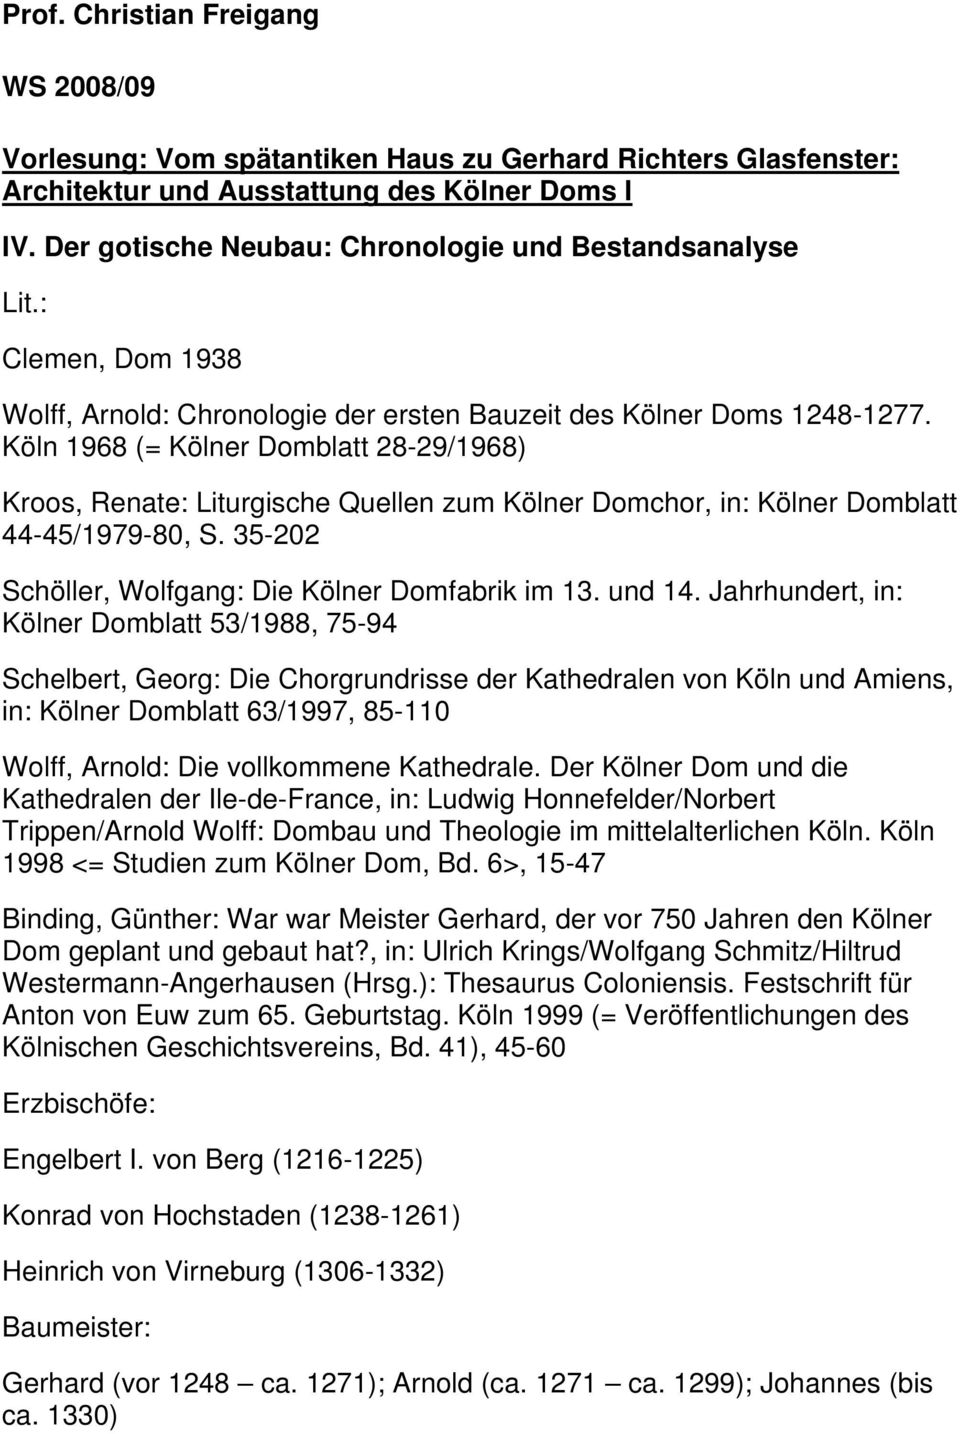 Jahrhundert, in: Kölner Domblatt 53/1988, 75-94 Schelbert, Georg: Die Chorgrundrisse der Kathedralen von Köln und Amiens, in: Kölner Domblatt 63/1997, 85-110 Wolff, Arnold: Die vollkommene Kathedrale.